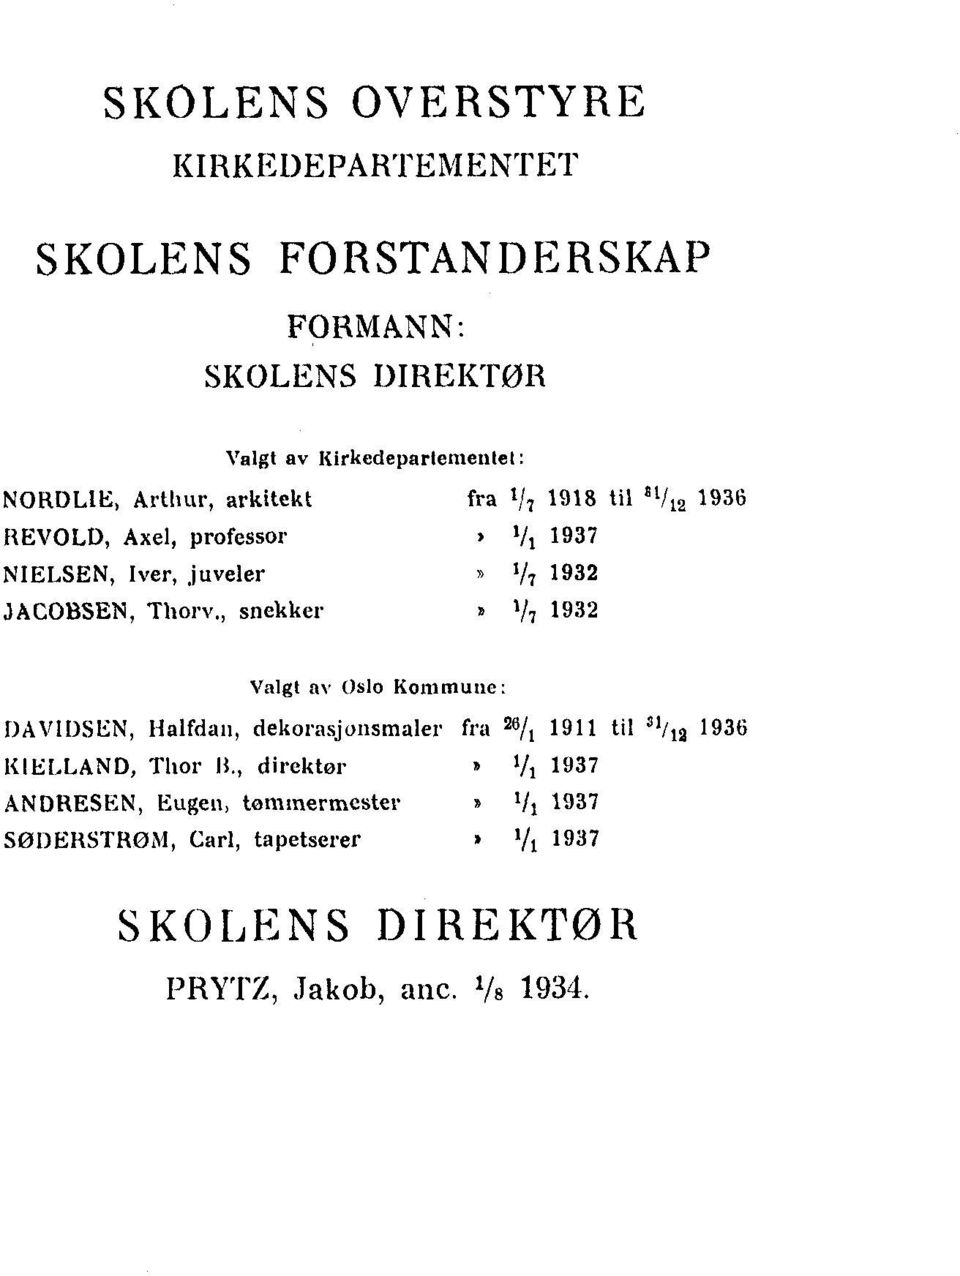 , snekker»1/7 1932 Valgt av Oslo Kommune: DAVIDSEN, Halfdan, dekorasjønsmalerfra 26/1 1911tiI31 /12 1936 KIELLAND, Thor II.